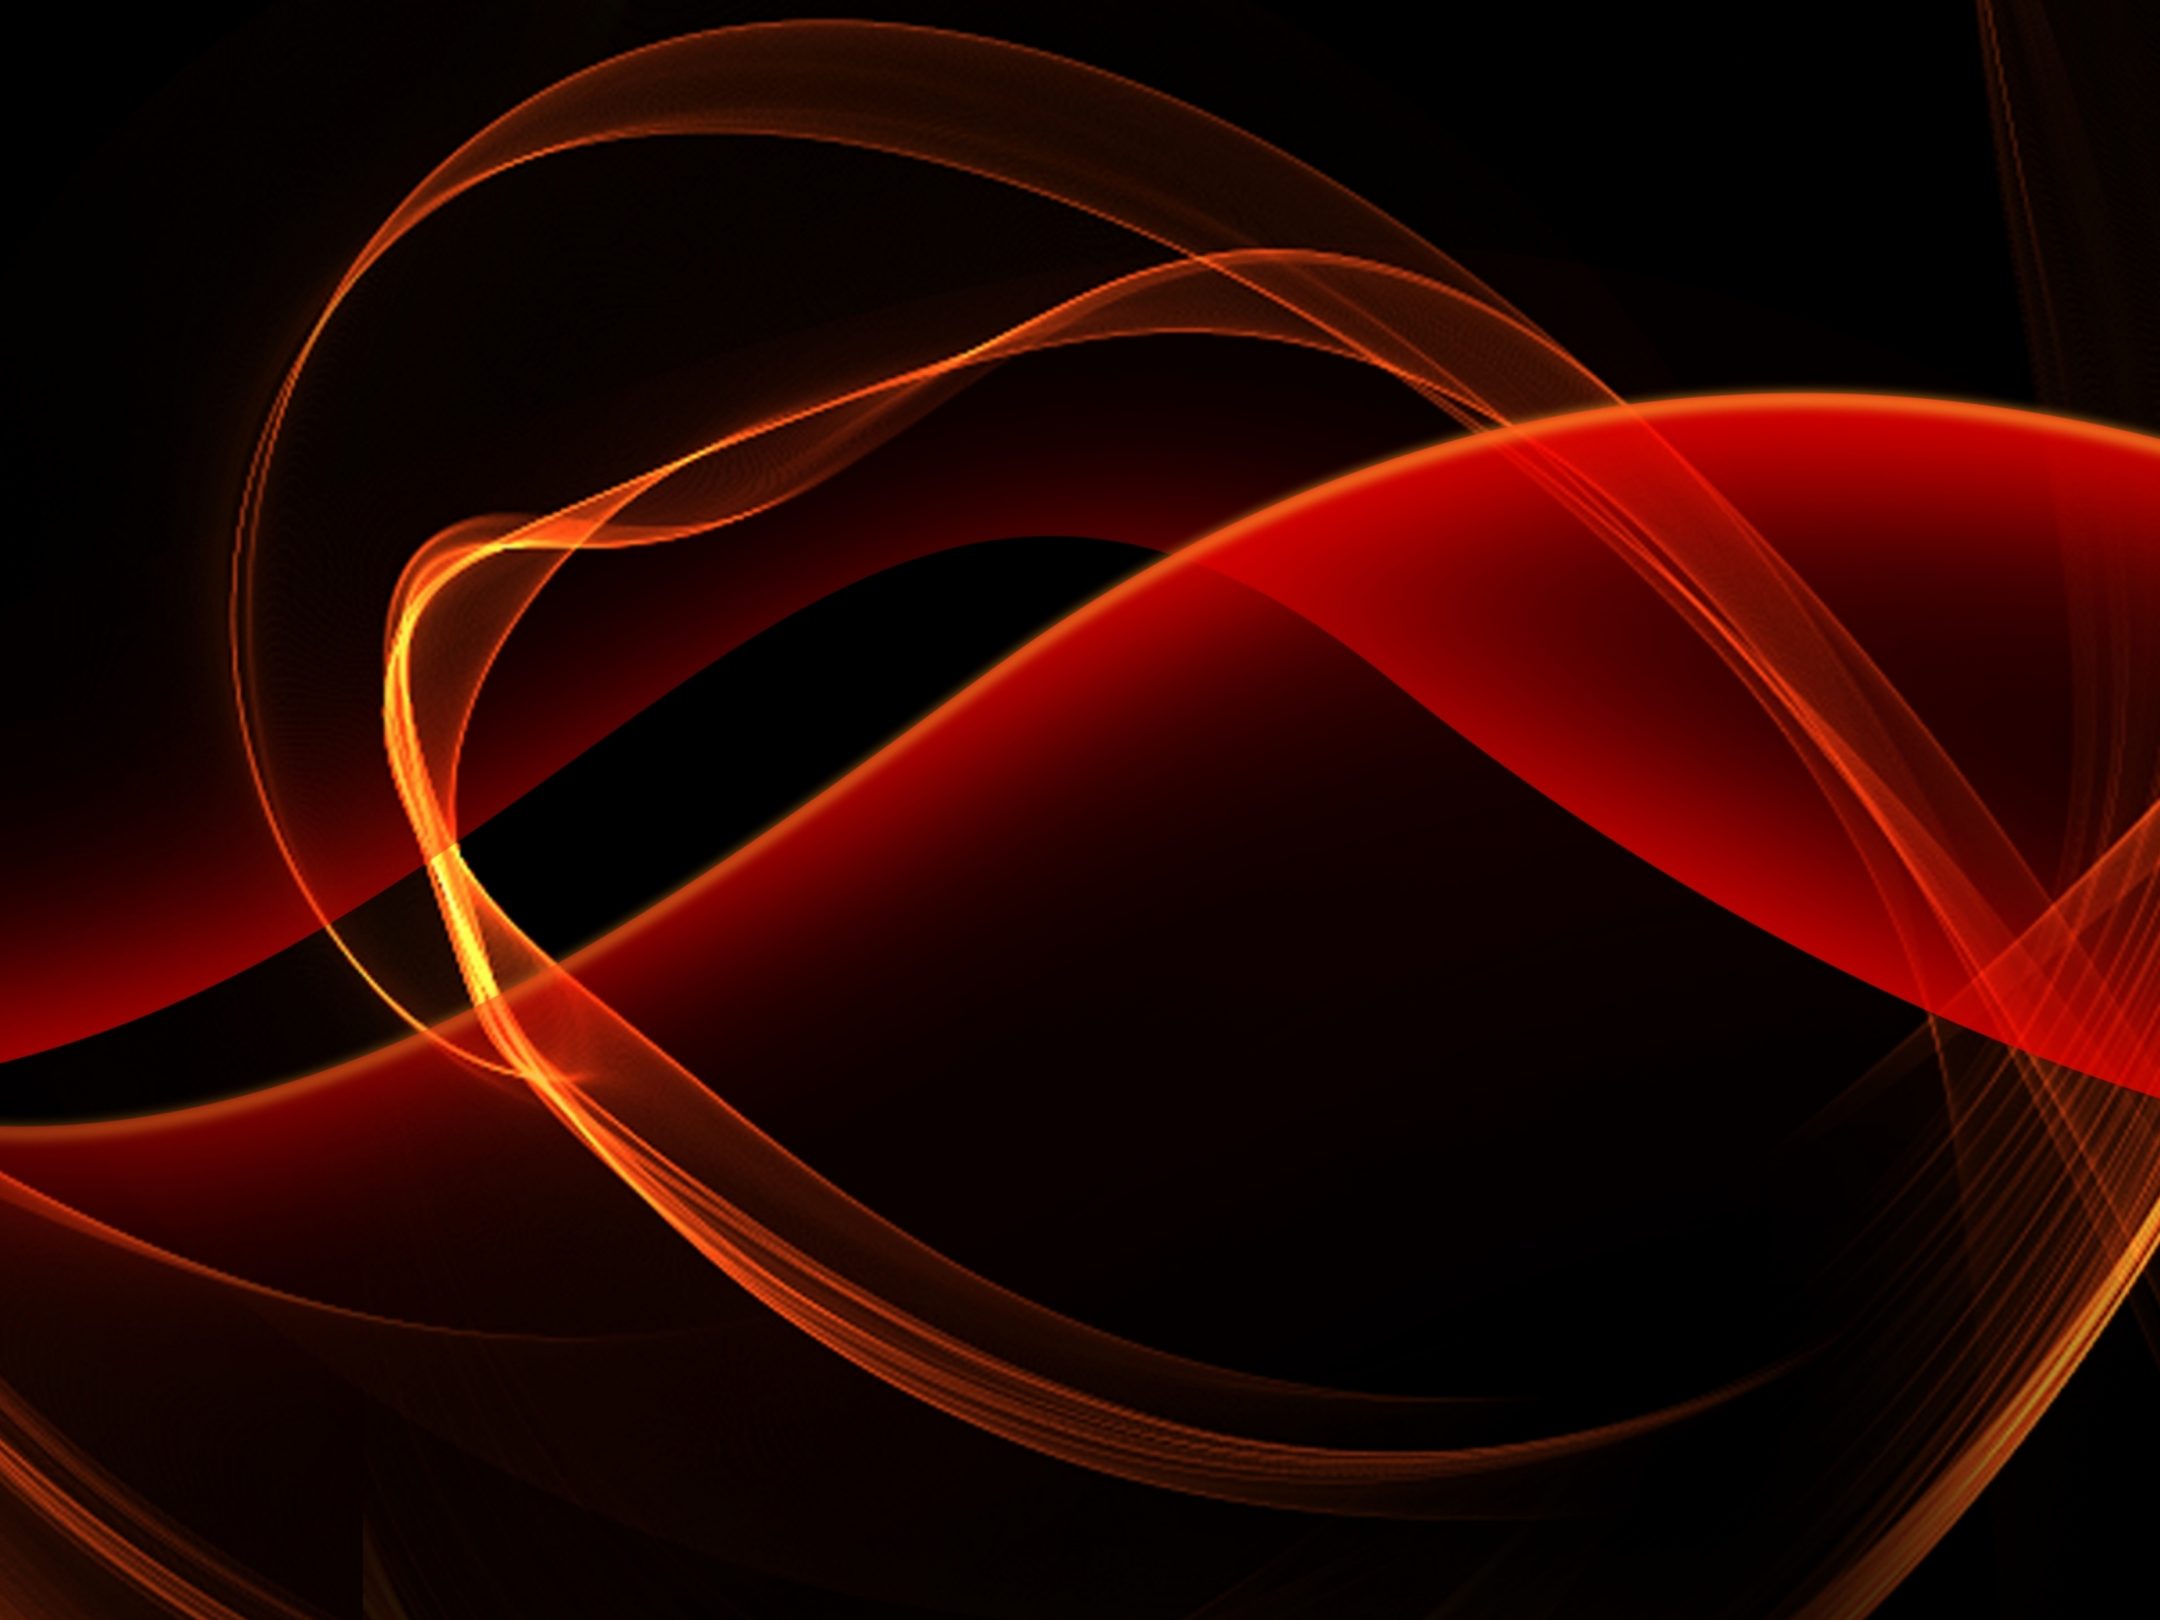 2160x1620 iPad wallpaper 4k Black and Red Glowing Curves iPad Wallpaper 2160x1620 pixels resolution